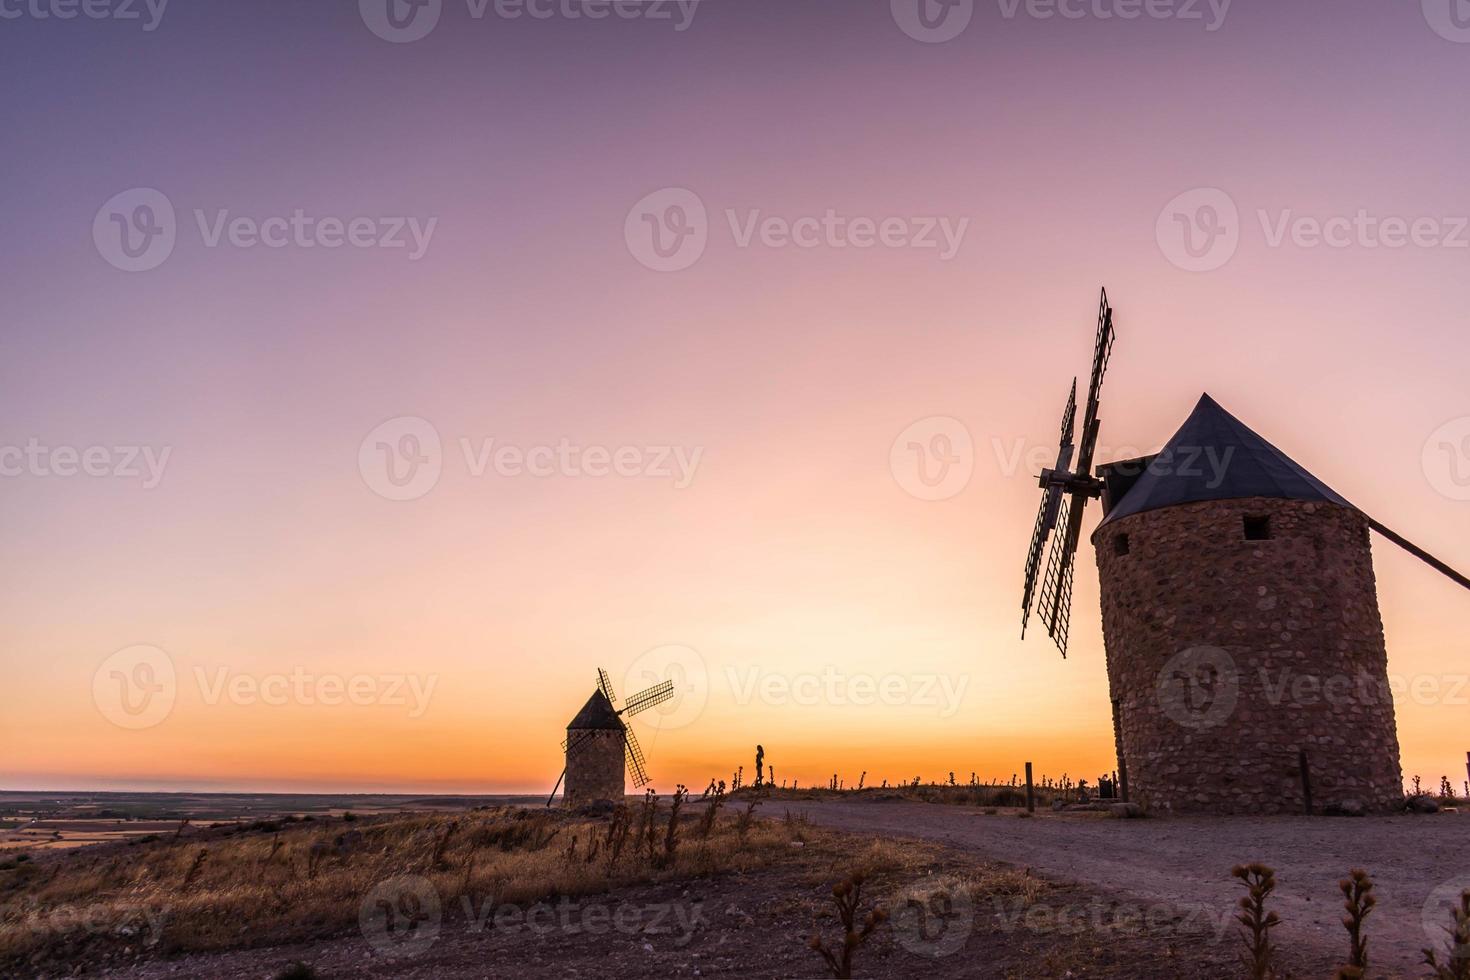 velhos moinhos de vento ao pôr do sol foto